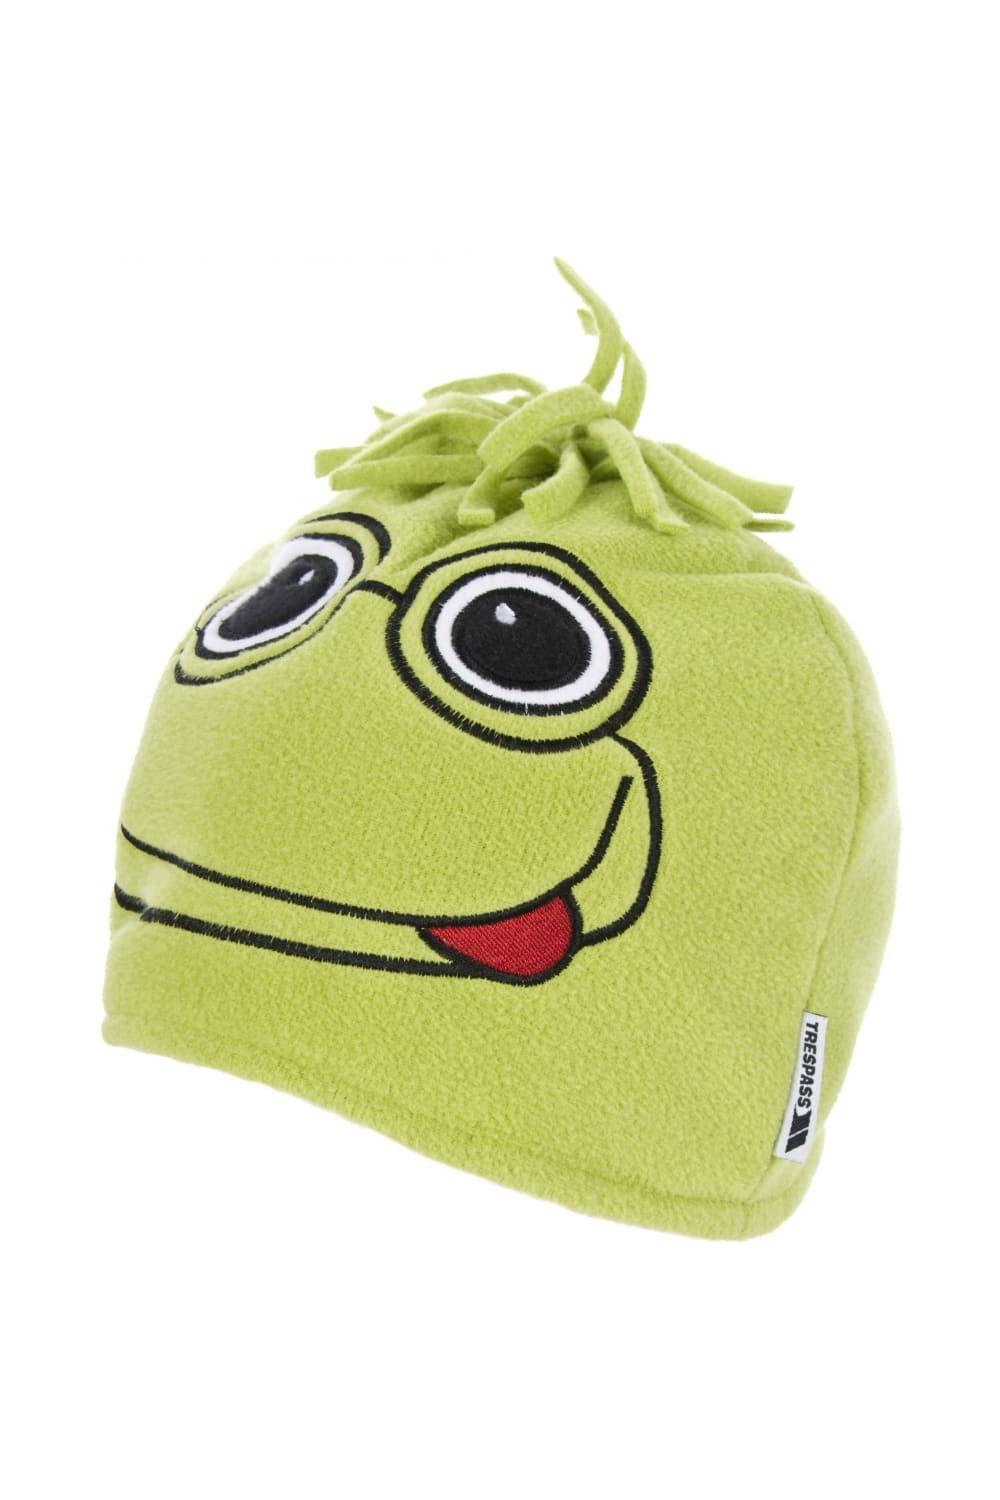 Шапка-бини Toadey Frog Trespass, зеленый шапка с вышивкой еврейская ермолка